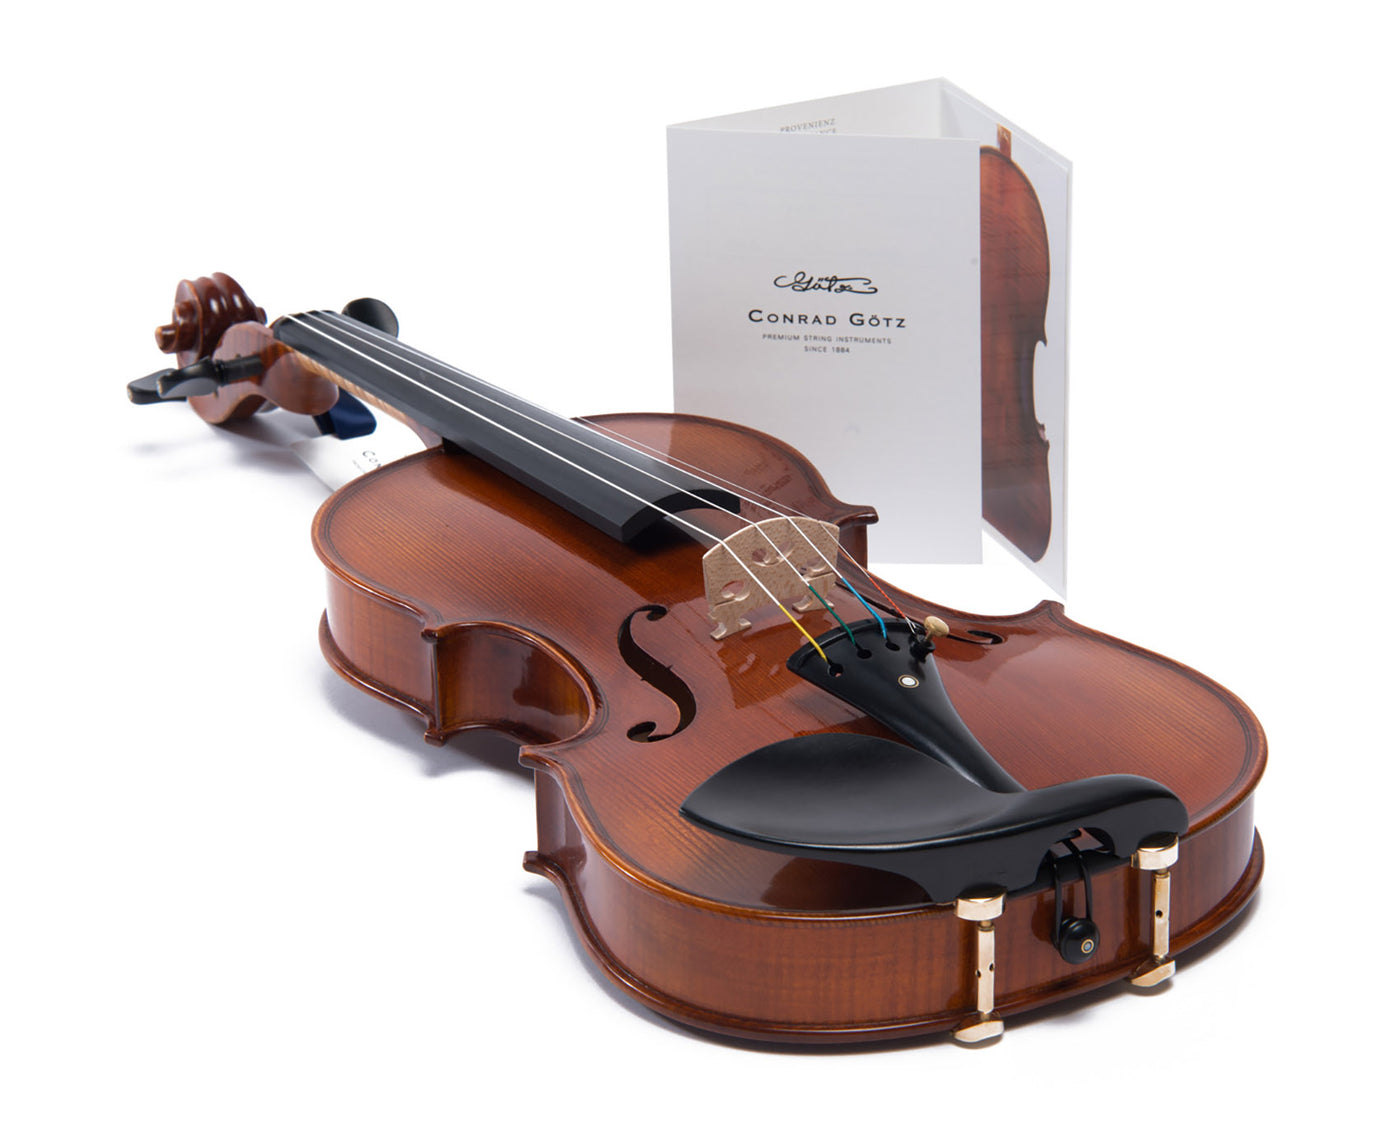 METROPOL Violin #108 MET 